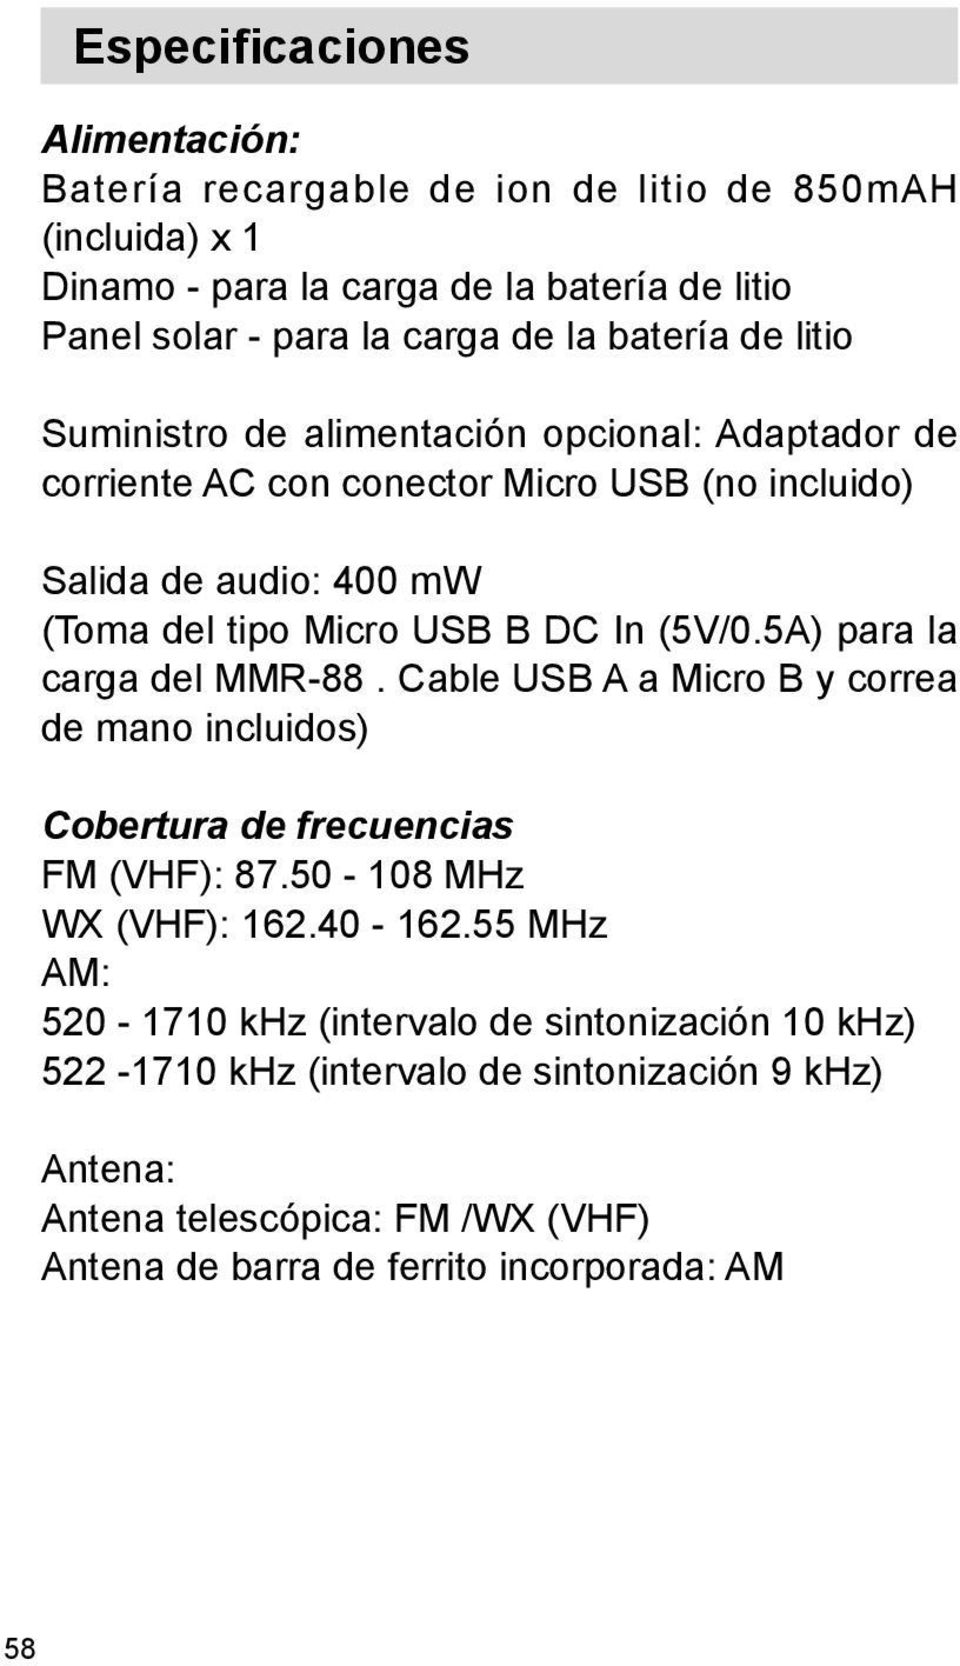 (5V/0.5A) para la carga del MMR-88. Cable USB A a Micro B y correa de mano incluidos) Cobertura de frecuencias FM (VHF): 87.50-108 MHz WX (VHF): 162.40-162.